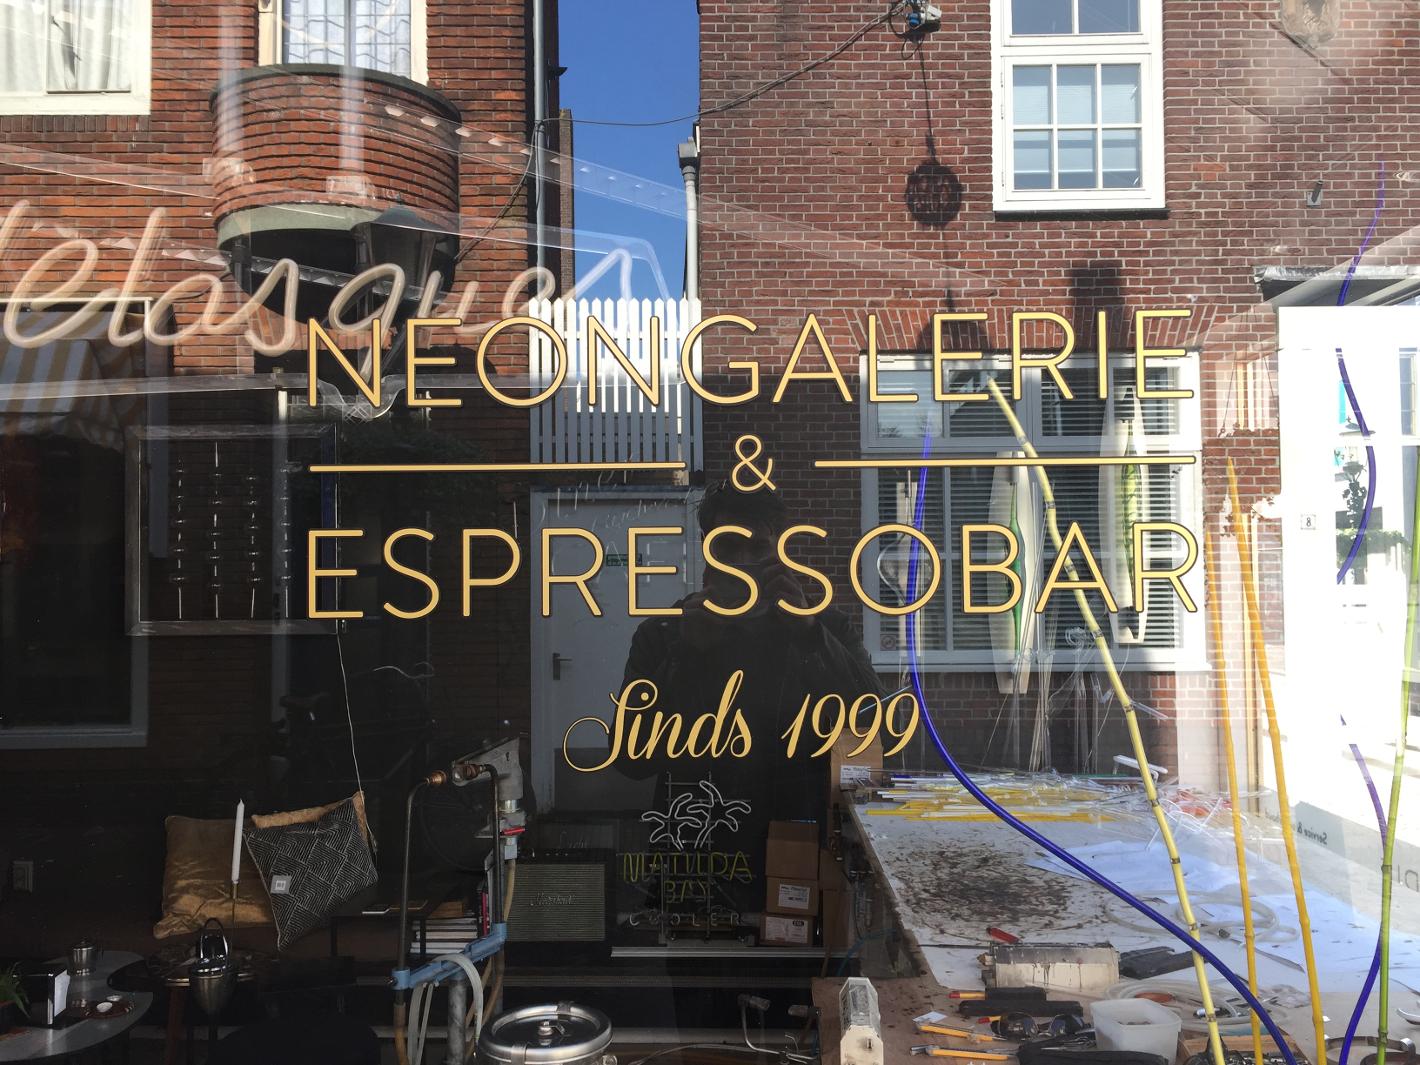 Foto Ray of Light Neongalerie & Espressobar in Alkmaar, Eten & drinken, Koffie, thee & gebak, Bezienswaardigheden - #3